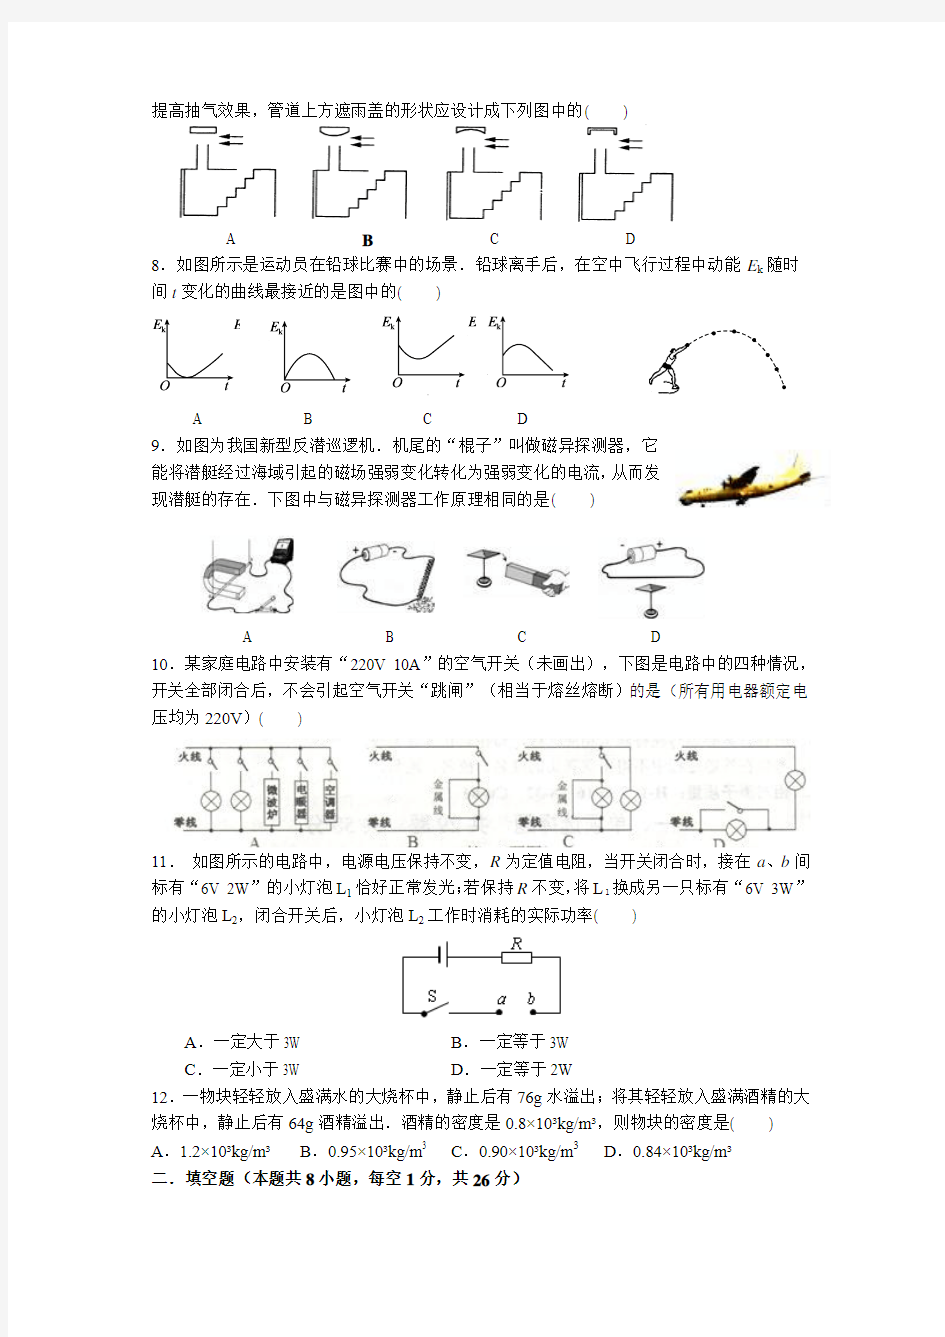 南京市2019年中考物理模拟试题(含答案)